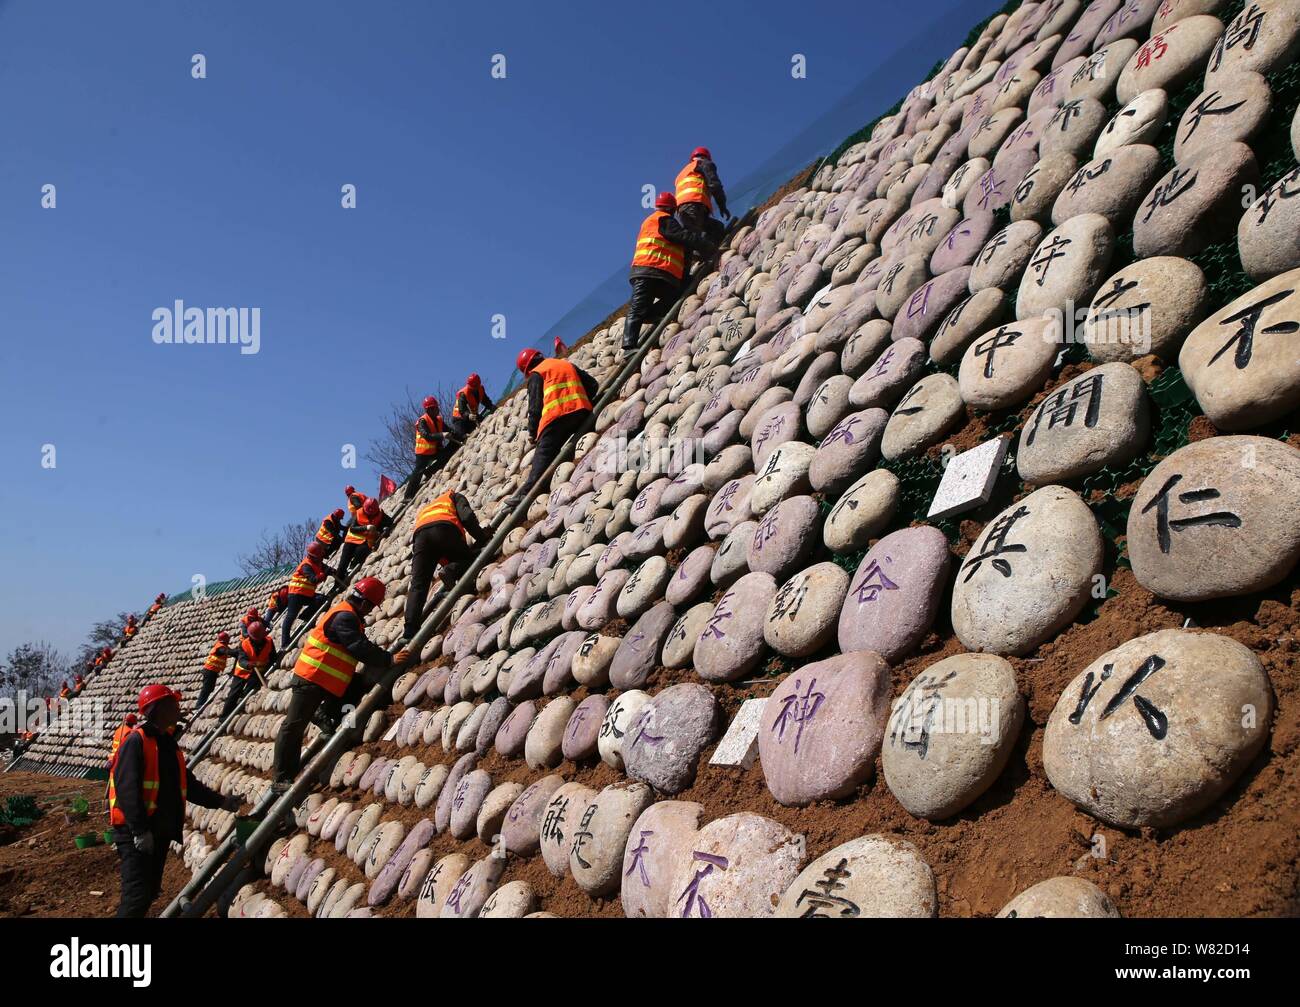 Visualizzazione dei lavoratori rocce scolpite con il testo del classico cinese Tao Te Ching', anche semplicemente indicata come Laozi, sulla montagna Wangwu in Jiyuan c Foto Stock